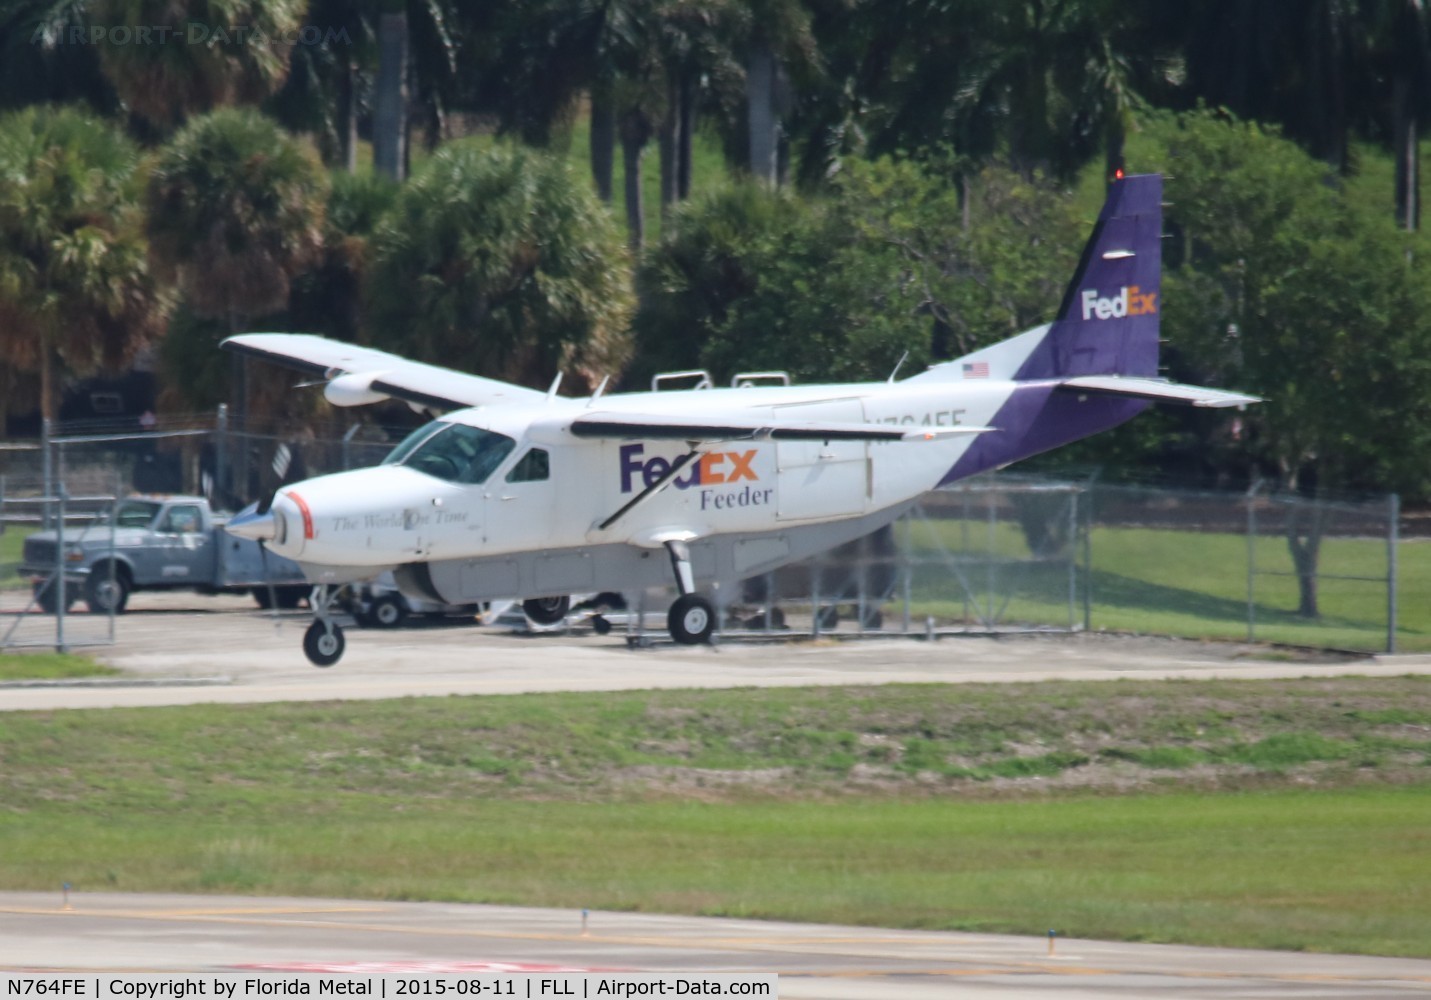 N764FE, 1991 Cessna 208B Super Cargomaster C/N 208B0258, Fed Ex